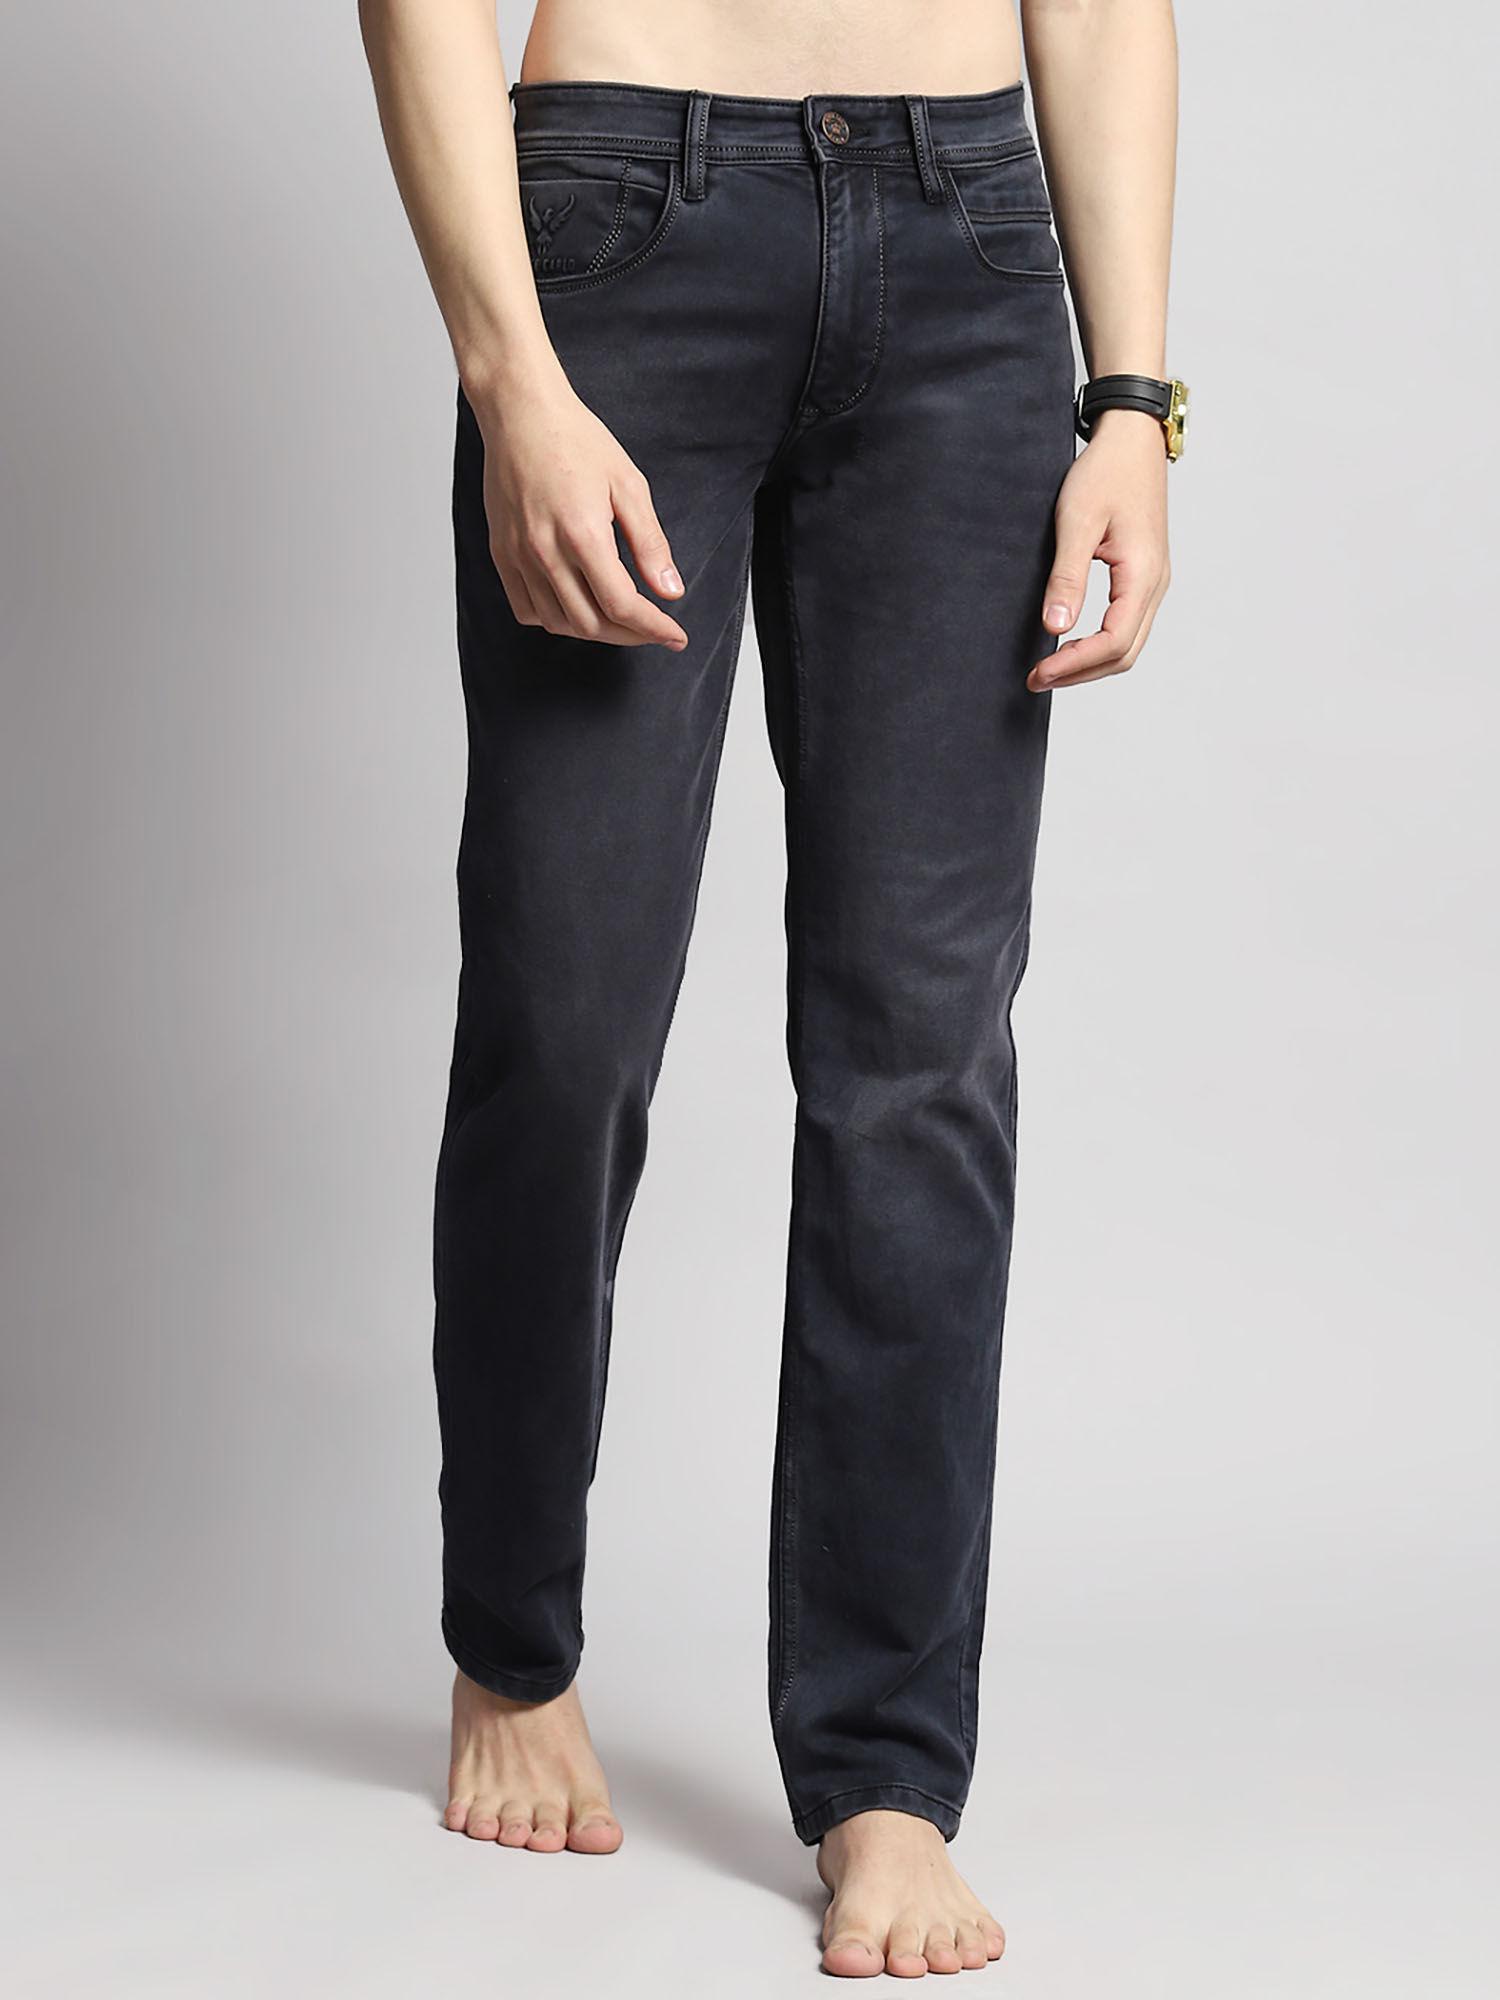 mens-black-plain-wash-cotton-blend-straight-fit-casual-jeans